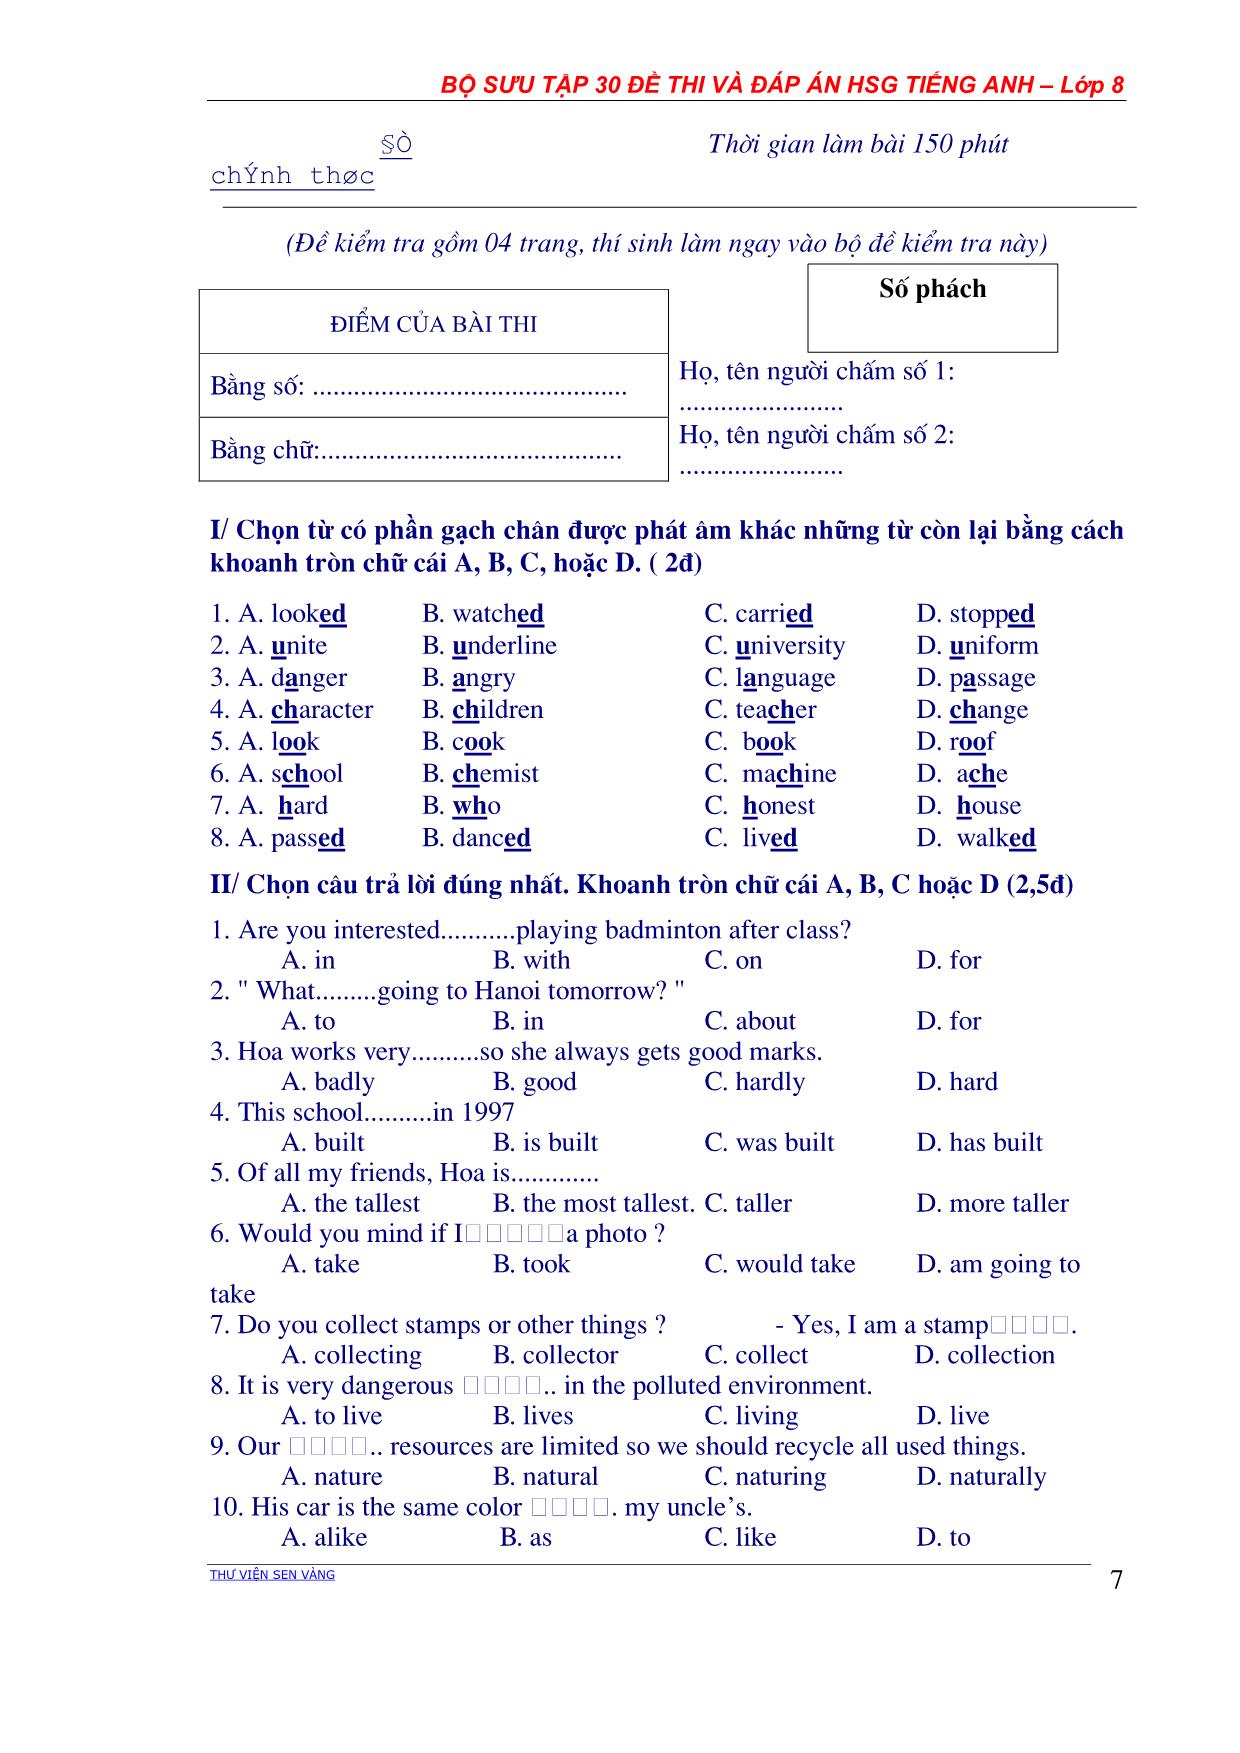 Bộ sưu tập 30 Đề thi học sinh giỏi môn Tiếng Anh Lớp 8 các năm học (Có đáp án) trang 7